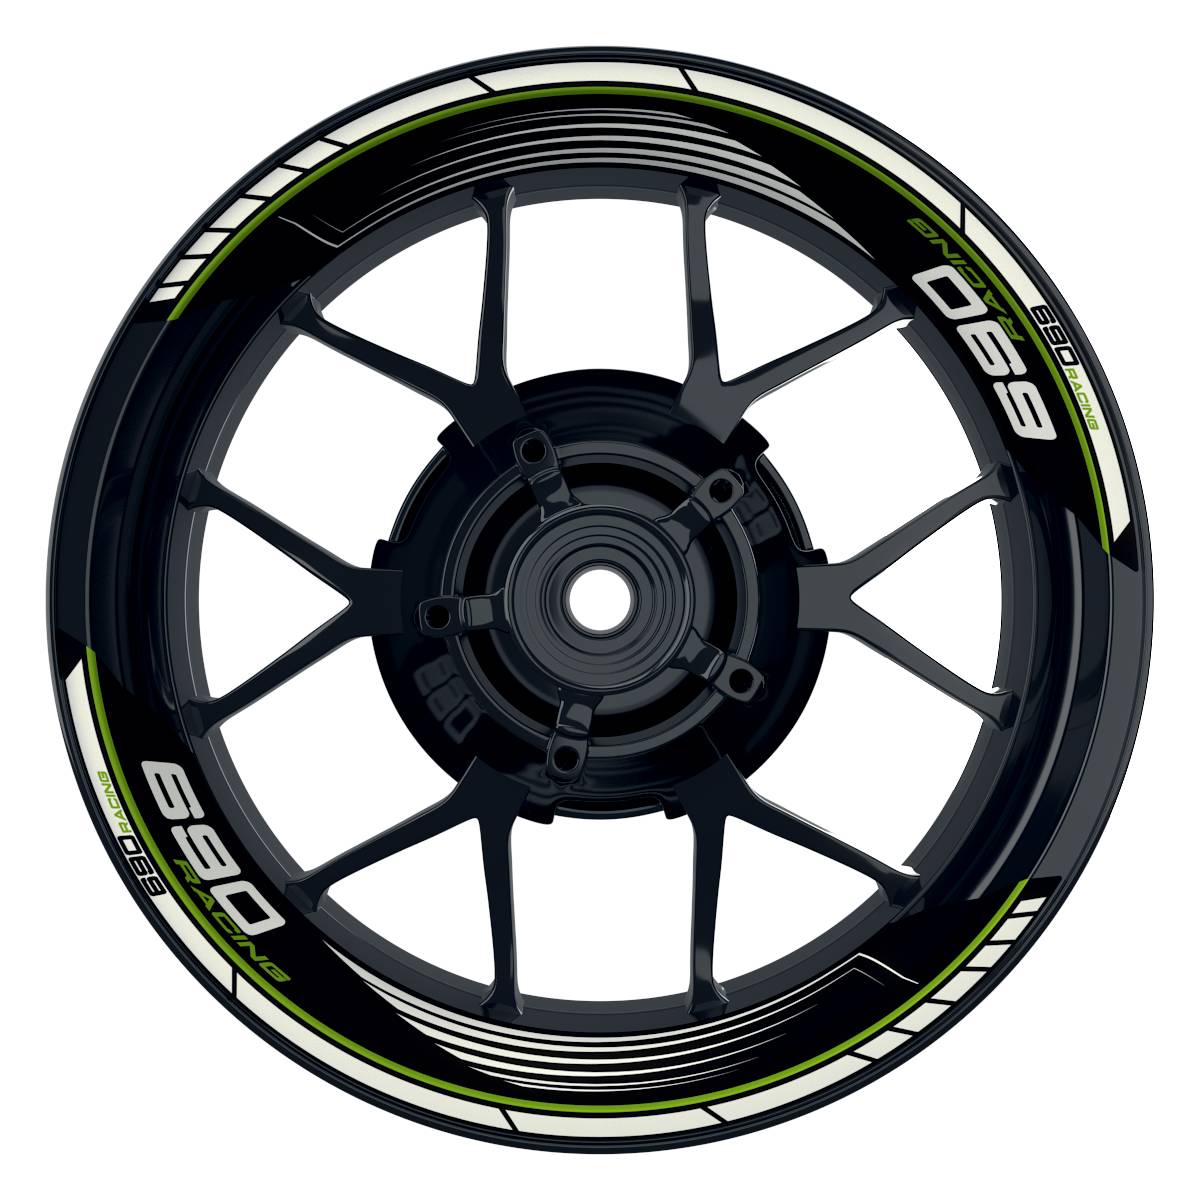 KTM Racing 690 SAW schwarz gruen Frontansicht